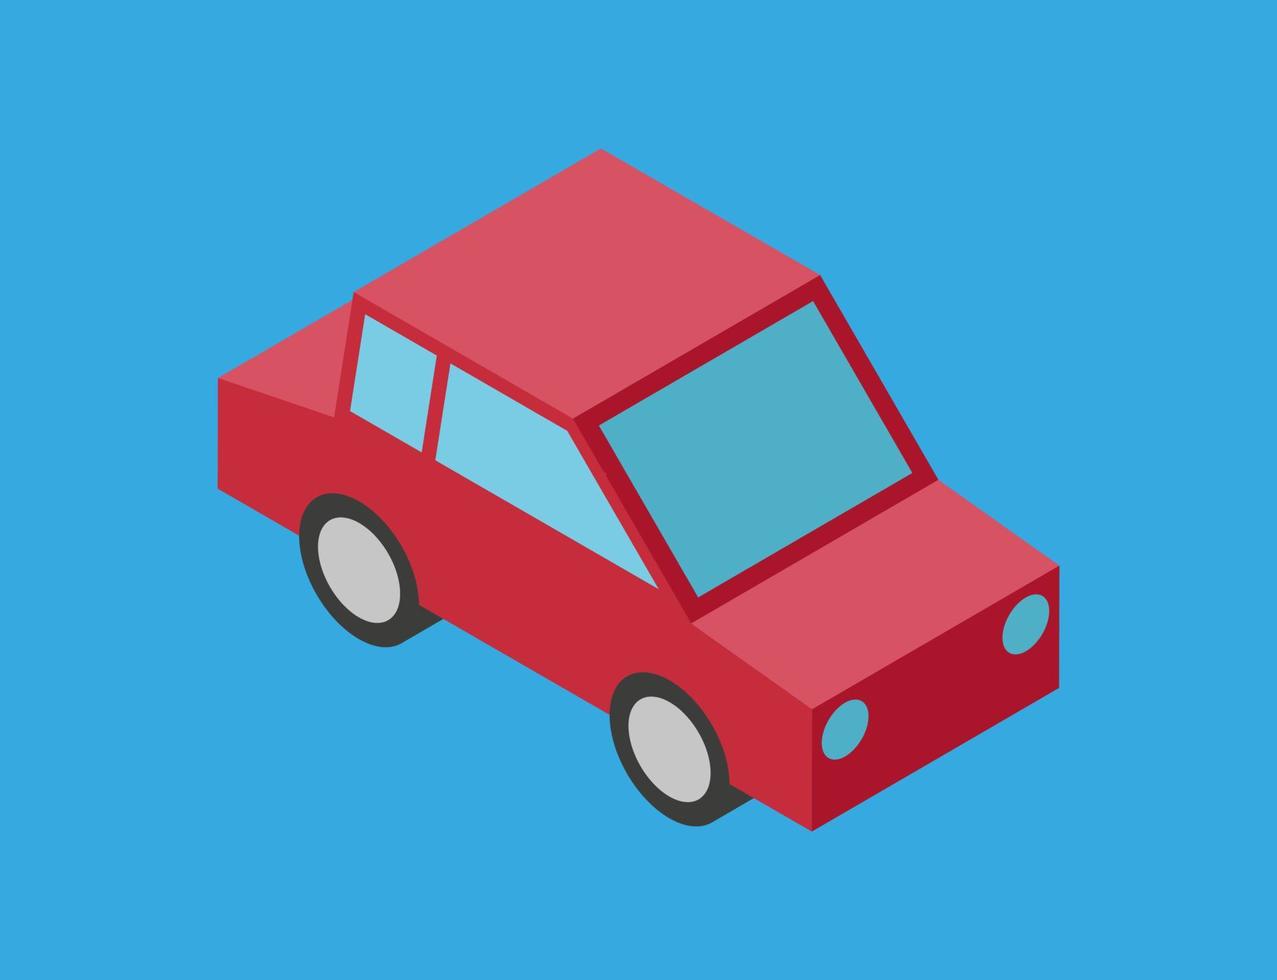 vectorillustratie van eenvoudige isometrische auto geïsoleerd op blauwe achtergrond. 3D-stijl auto illustratie. rode auto eenvoudig pictogram. cartoon symbool van auto vector